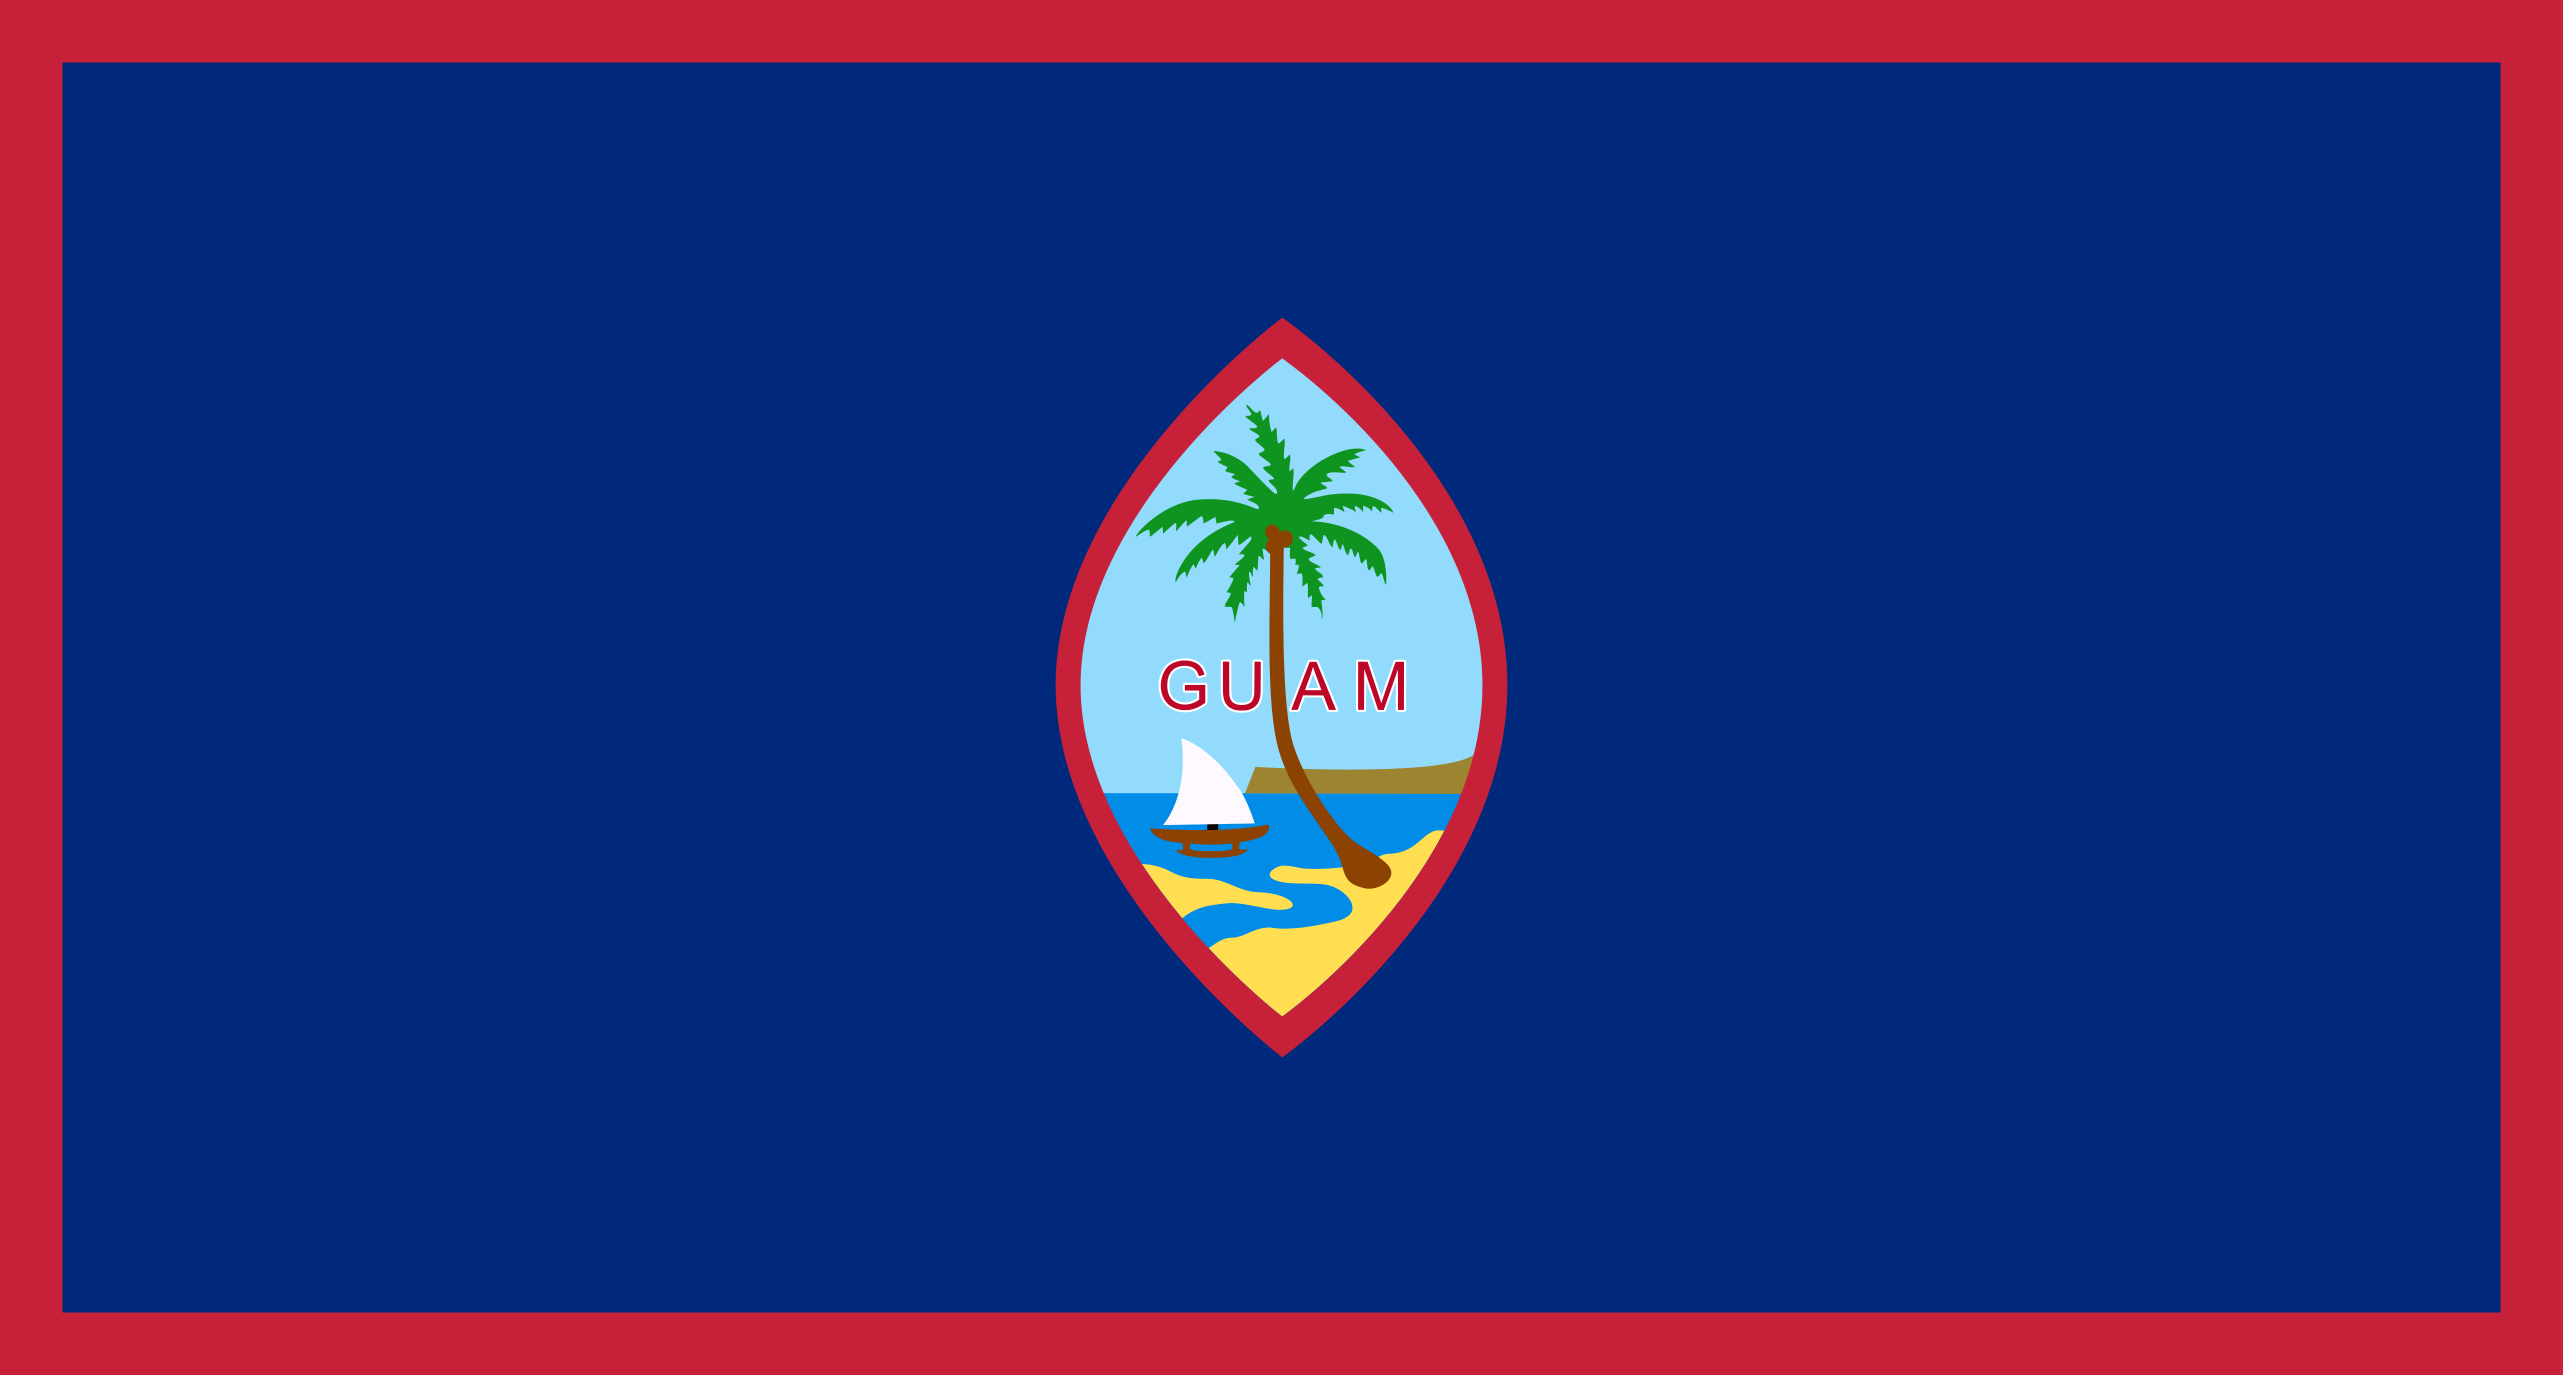 Guam Flag Vector - Free Download